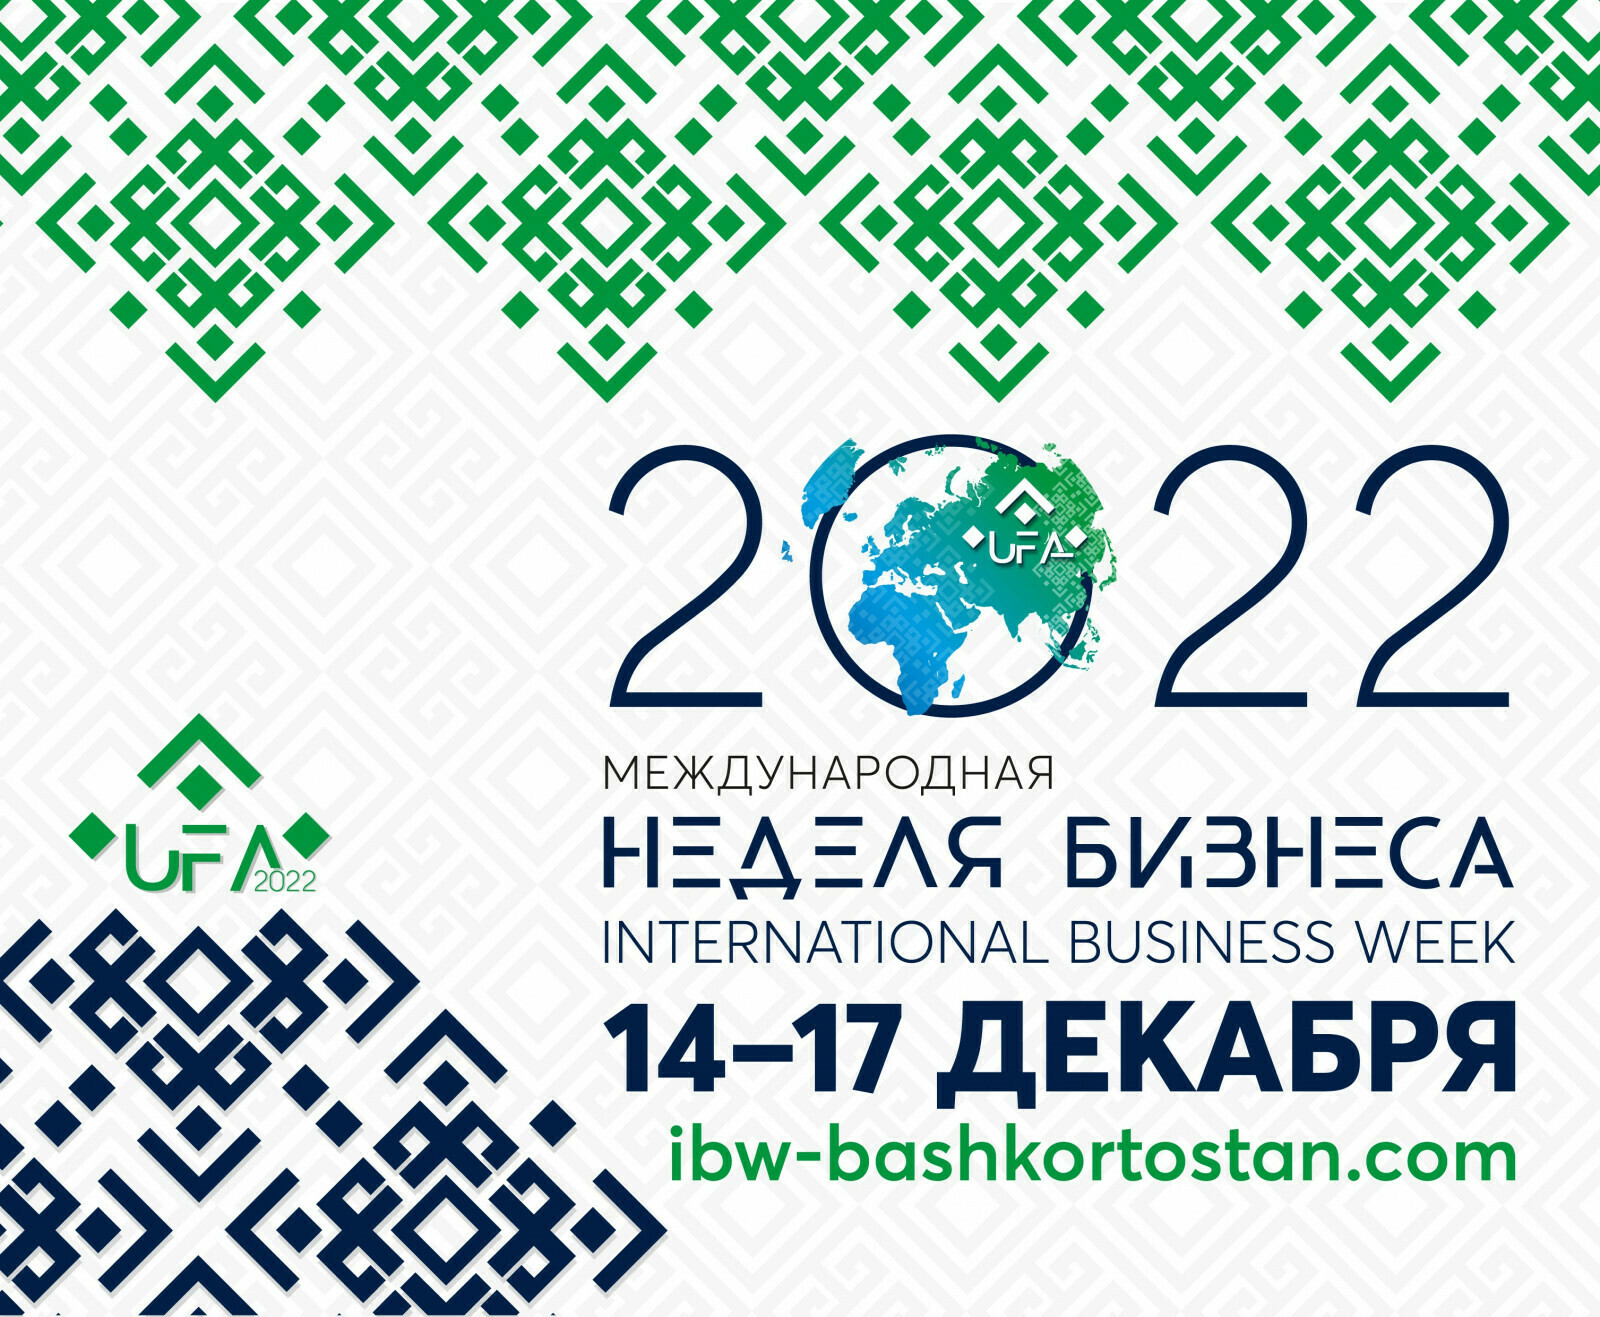 Меньше недели осталось до «Международной недели бизнеса — 2022»!